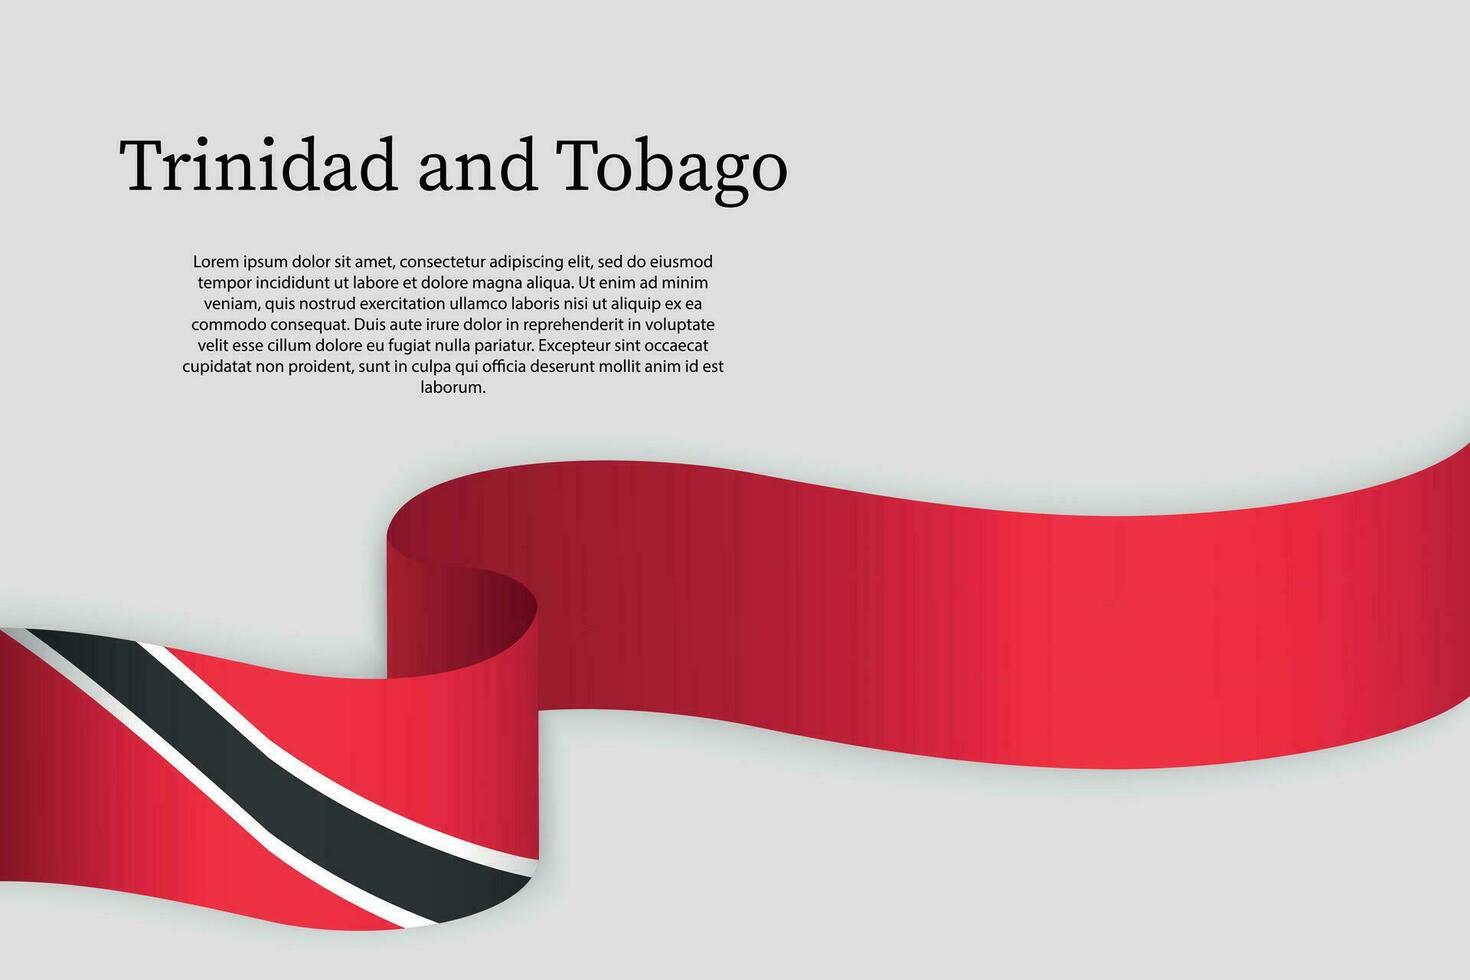 Band Flagge von Trinidad und Tobago. Feier Hintergrund vektor